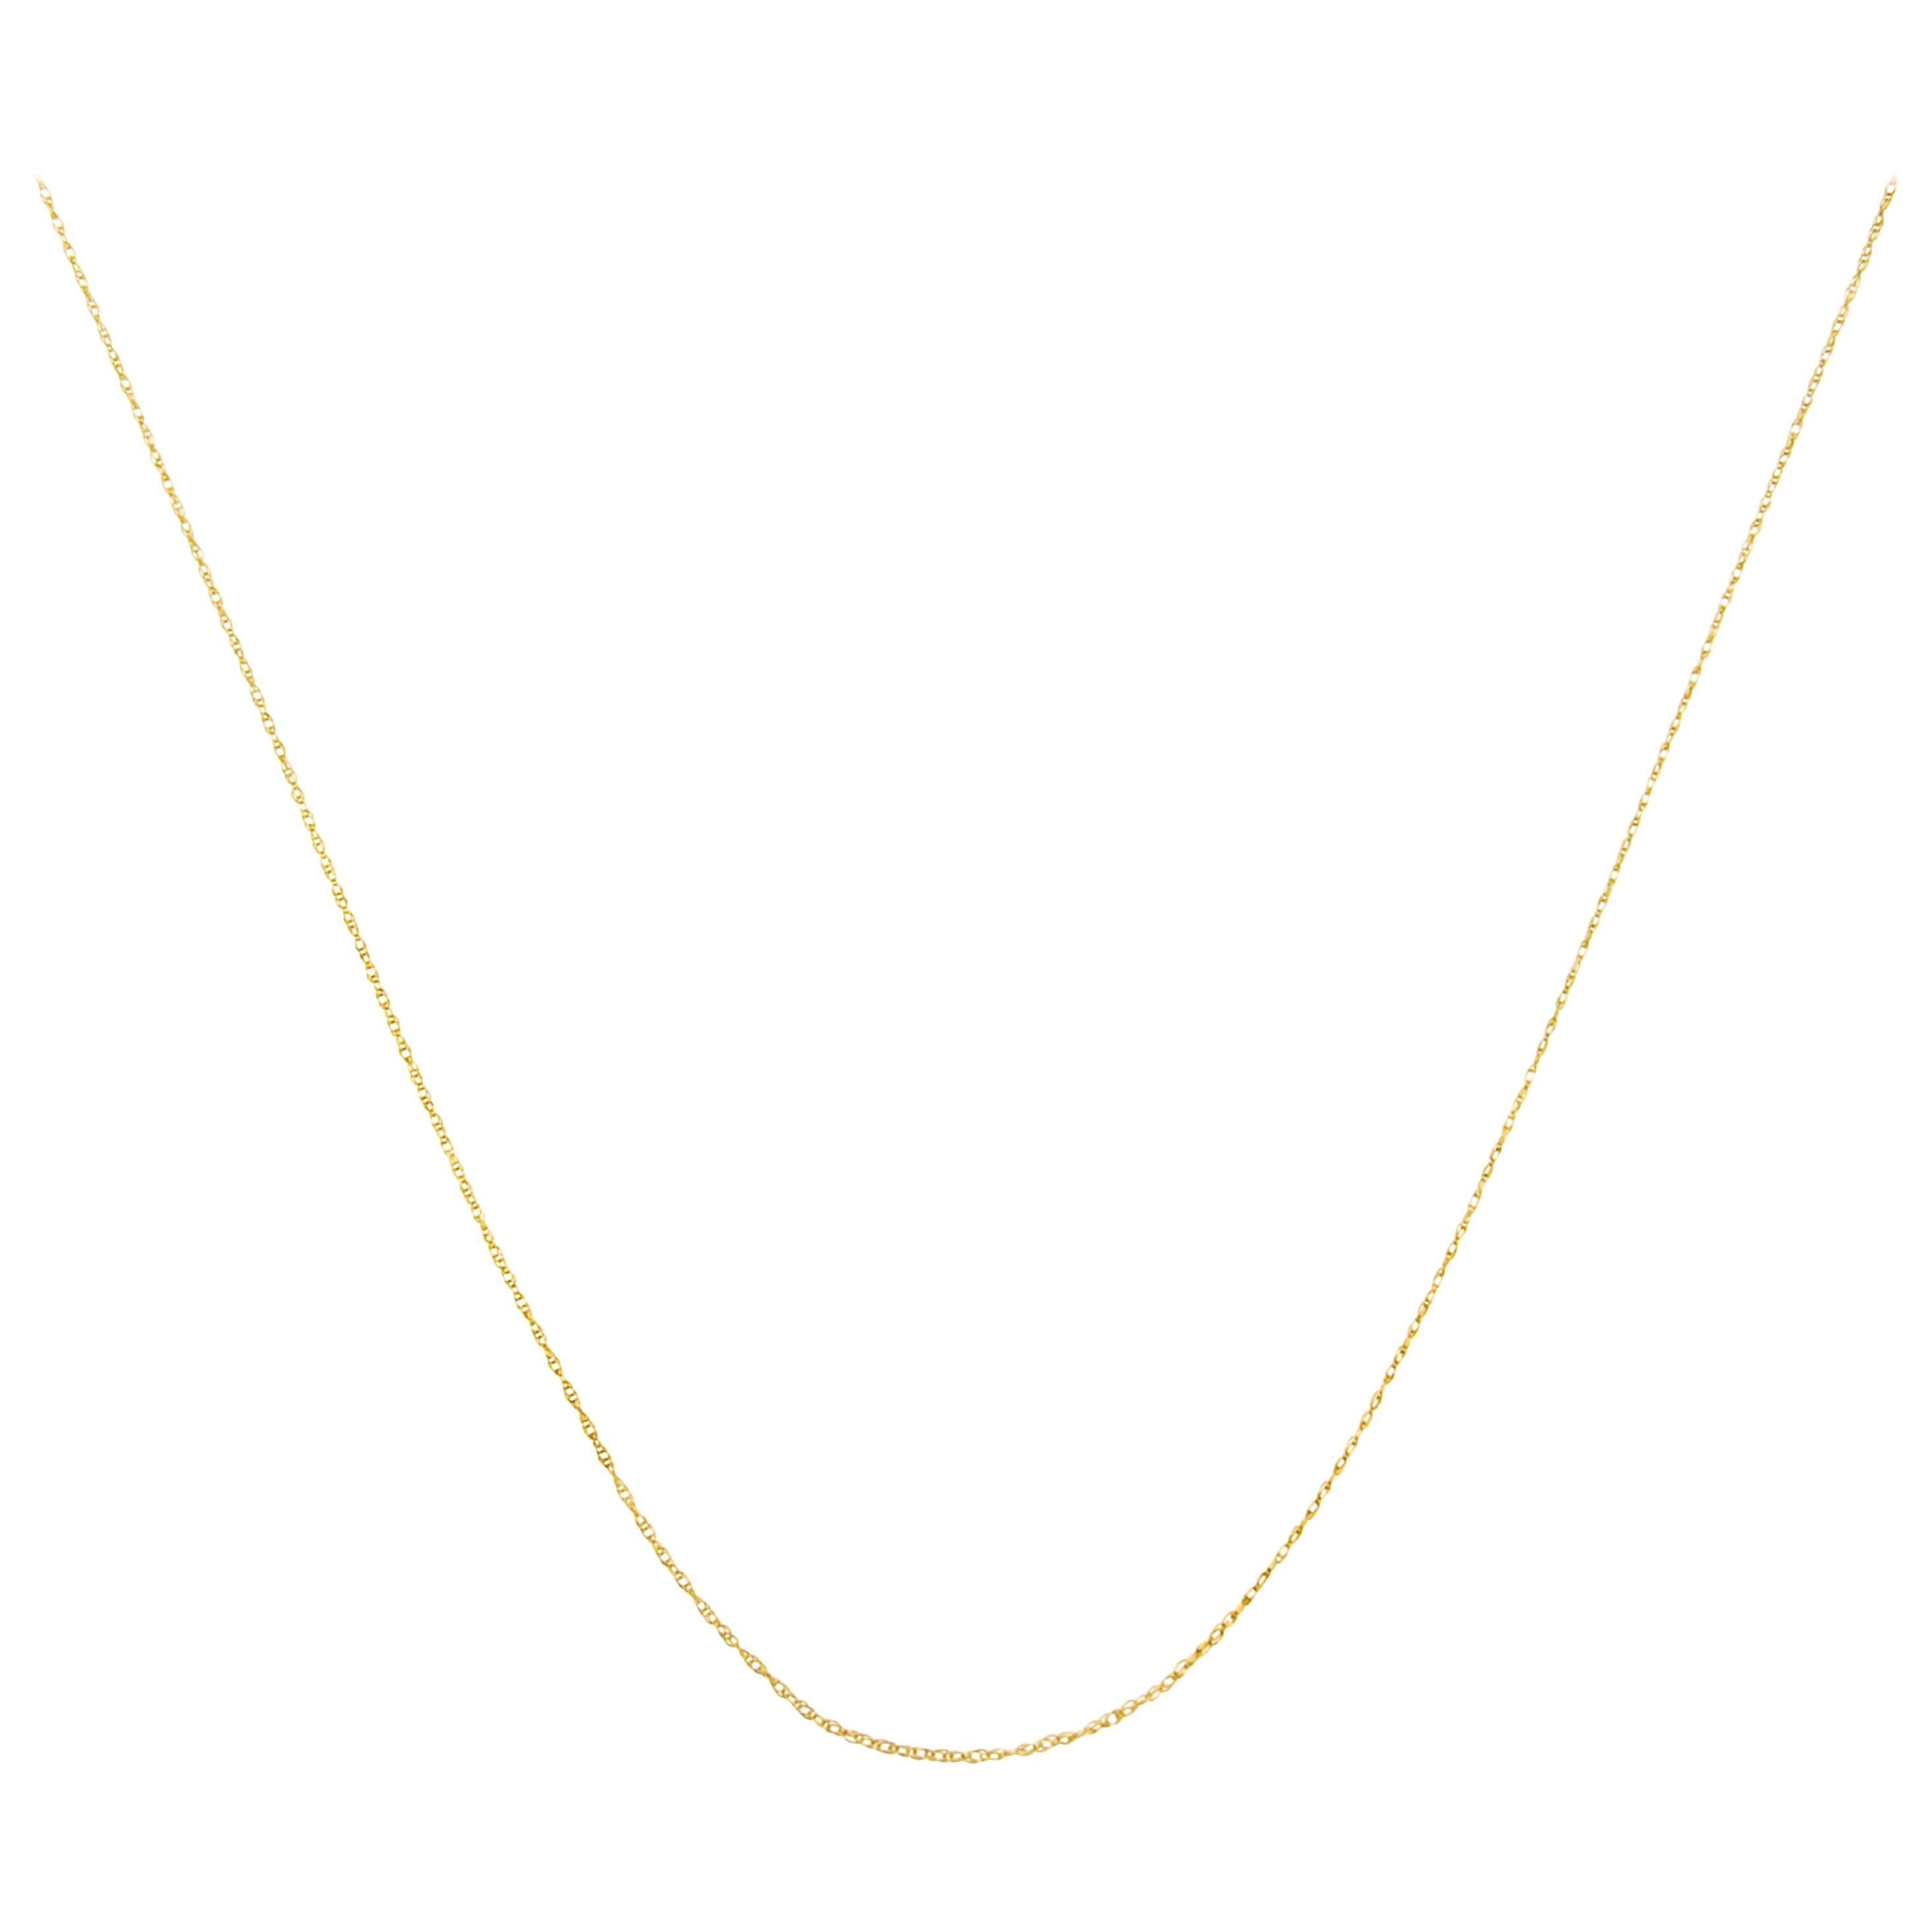 Halskette aus massivem 10 Karat Gelbgold mit Unisex-Seil